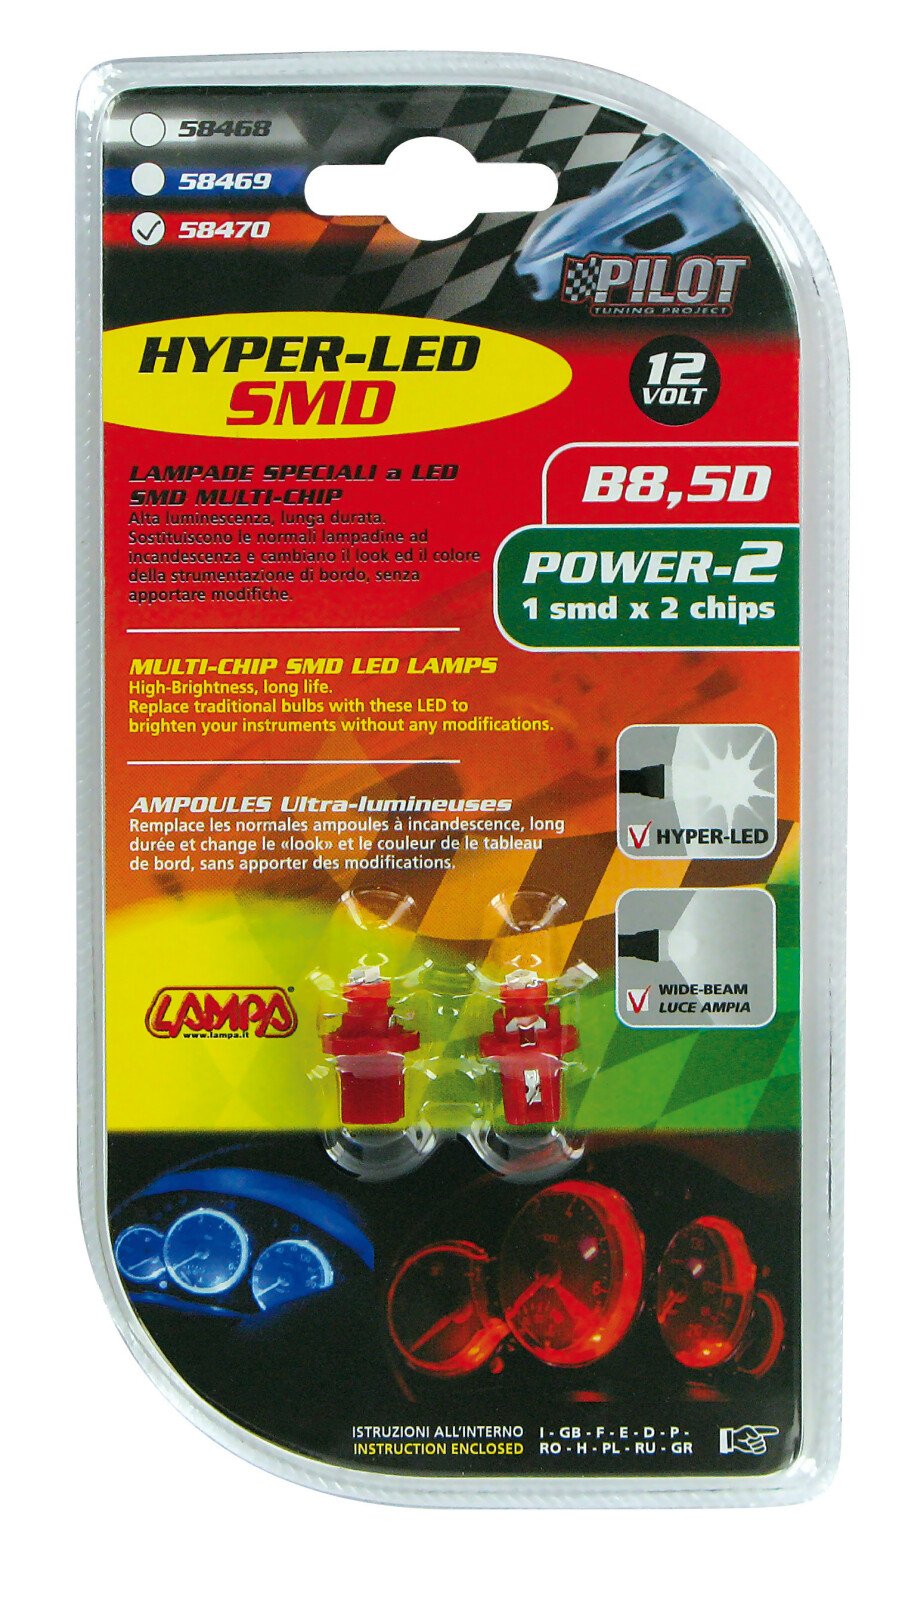 12V Hyper-Led 2 - 1 SMD x 2 chips - B8,5d - 2 db - Piros thumb